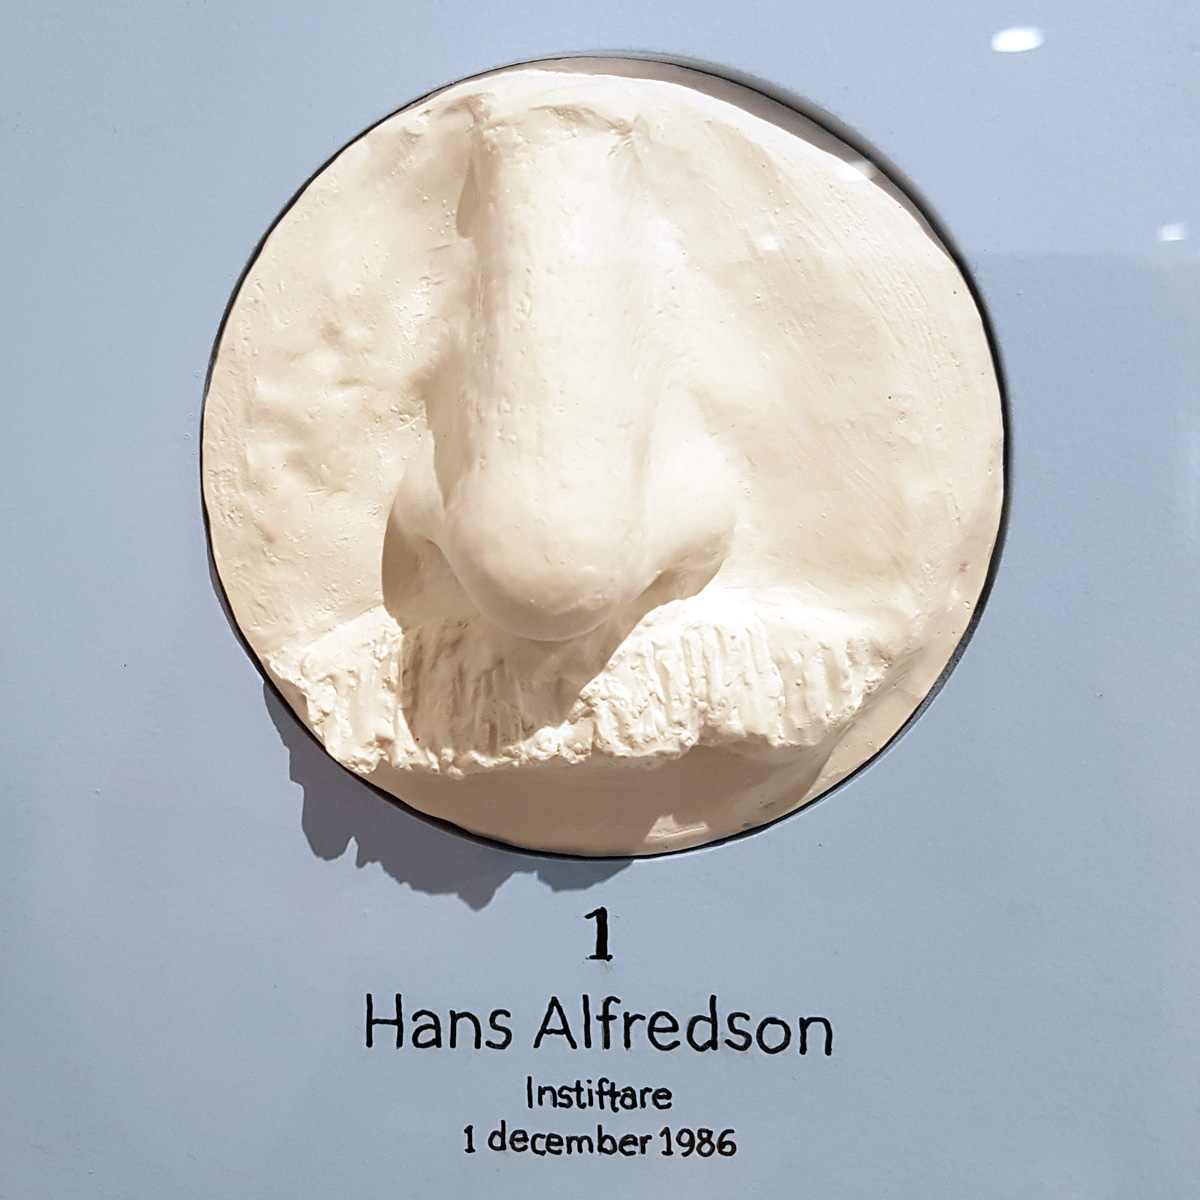 Näsa nummer 1, en avgjutning av Hans Alfredssons näsa